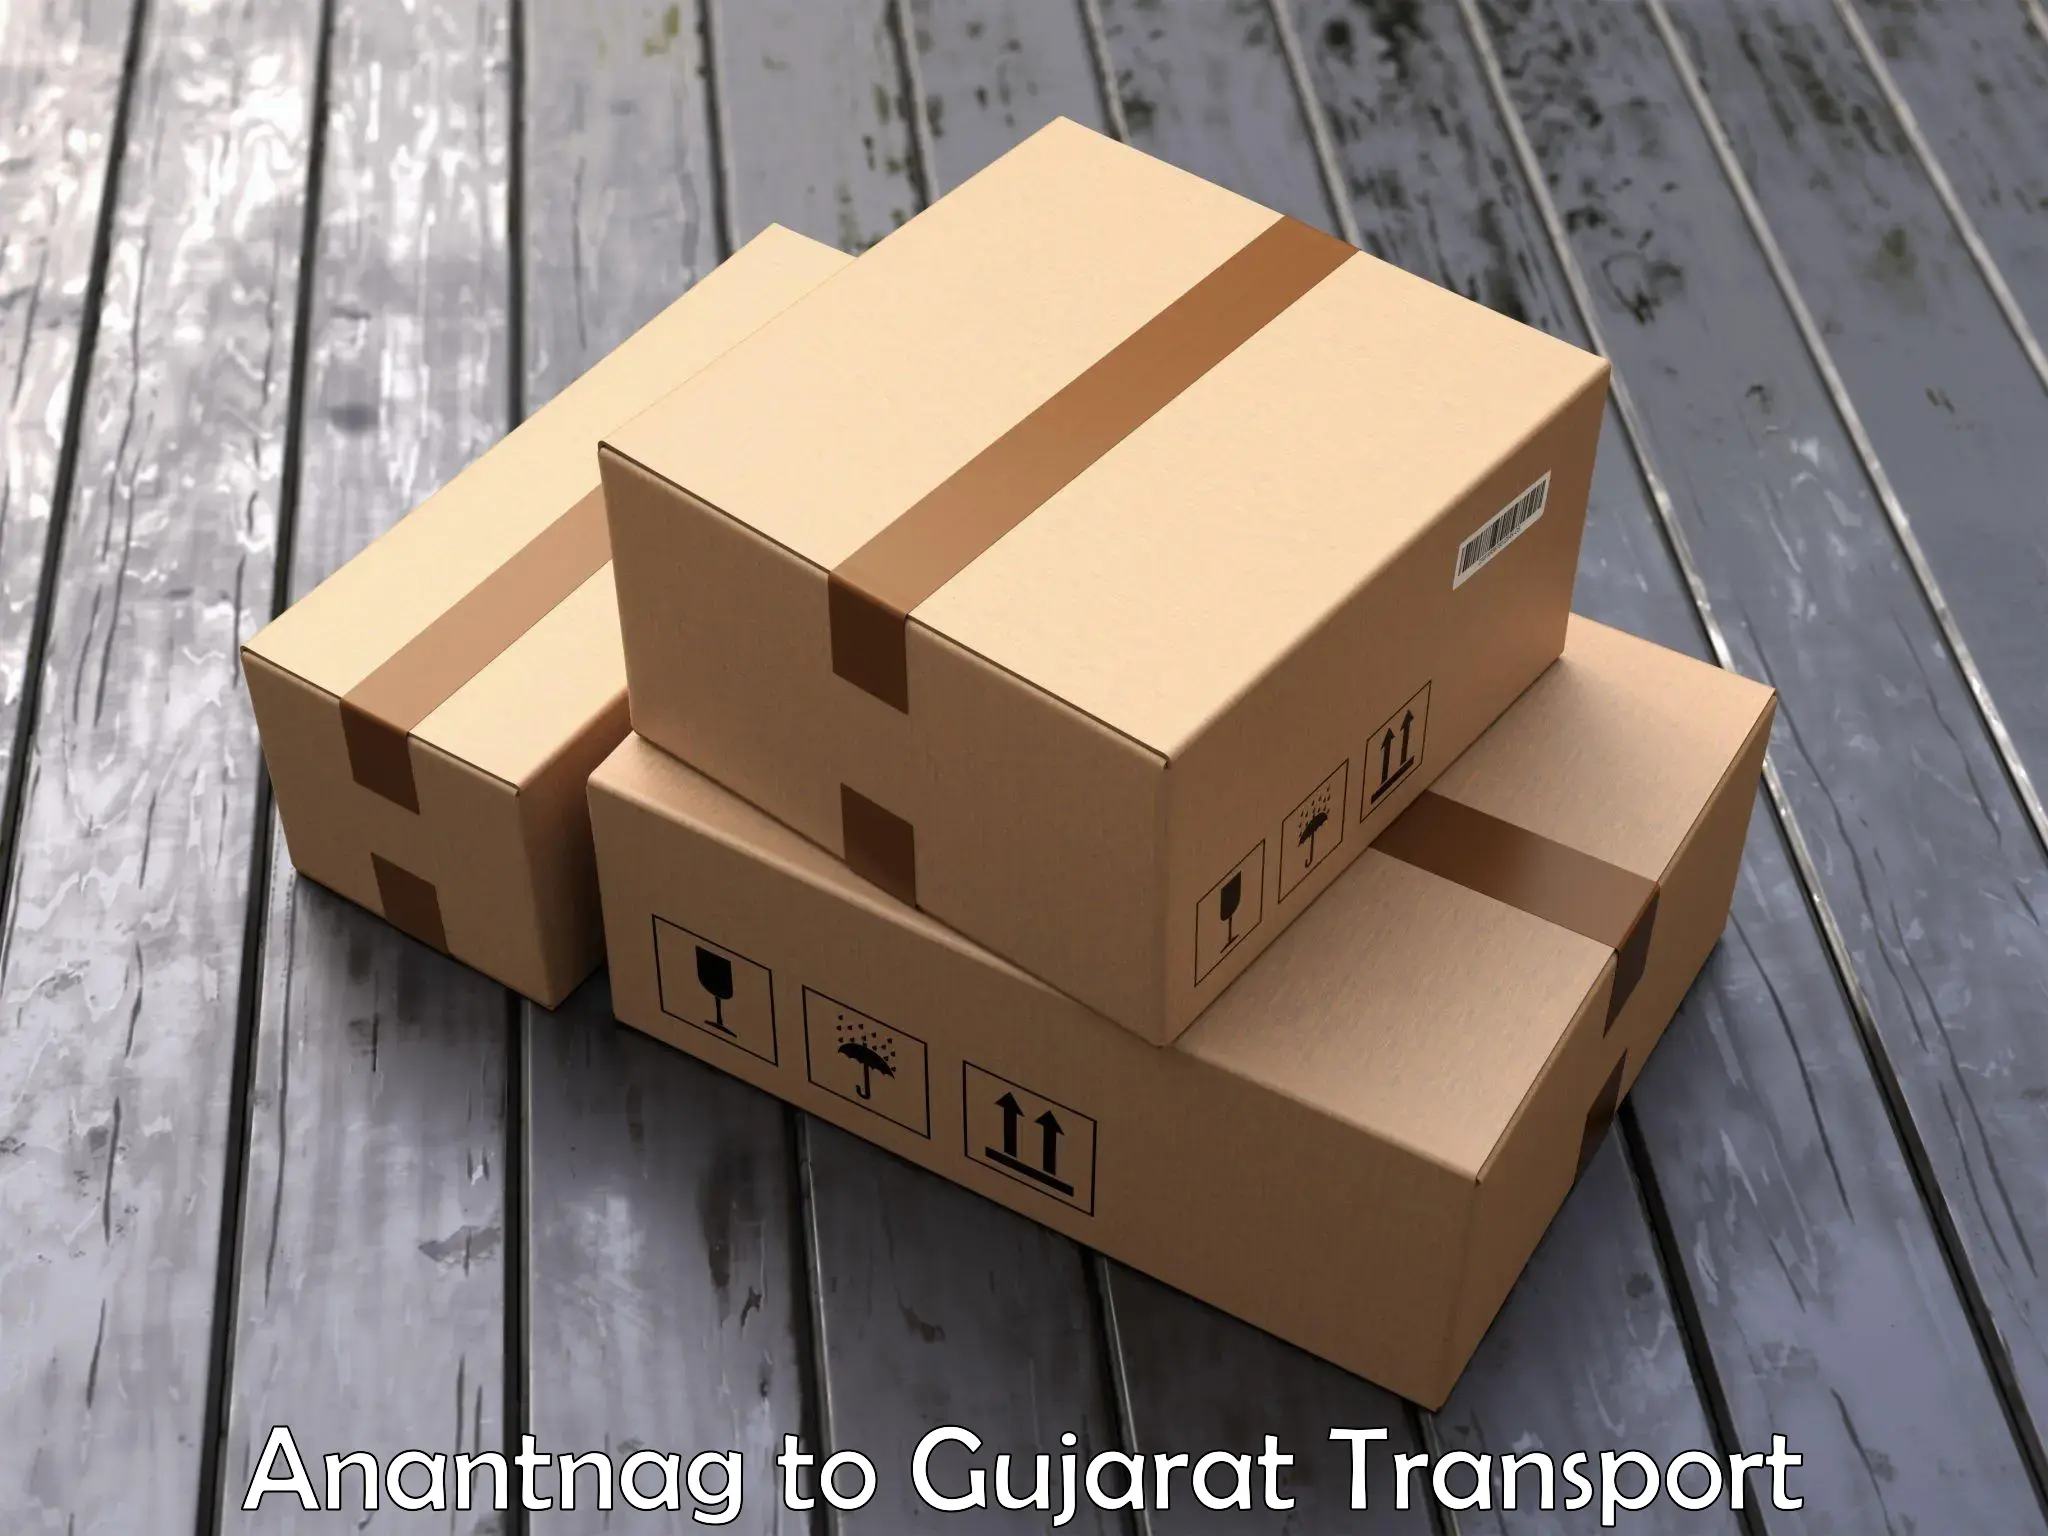 Nearest transport service Anantnag to Gandhidham